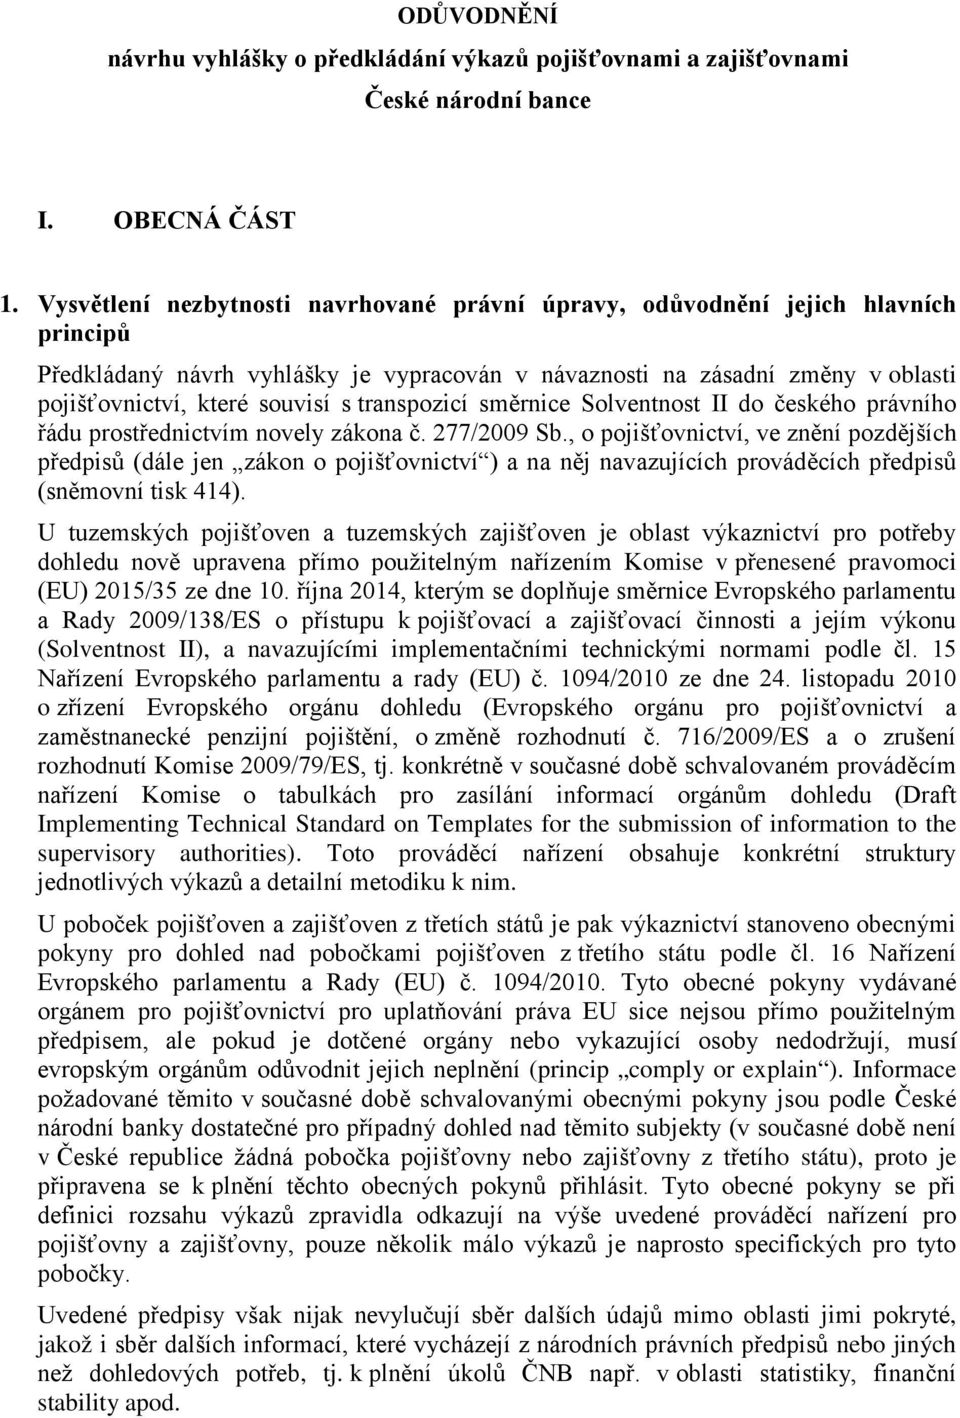 transpozicí směrnice Solventnost II do českého právního řádu prostřednictvím novely zákona č. 277/2009 Sb.